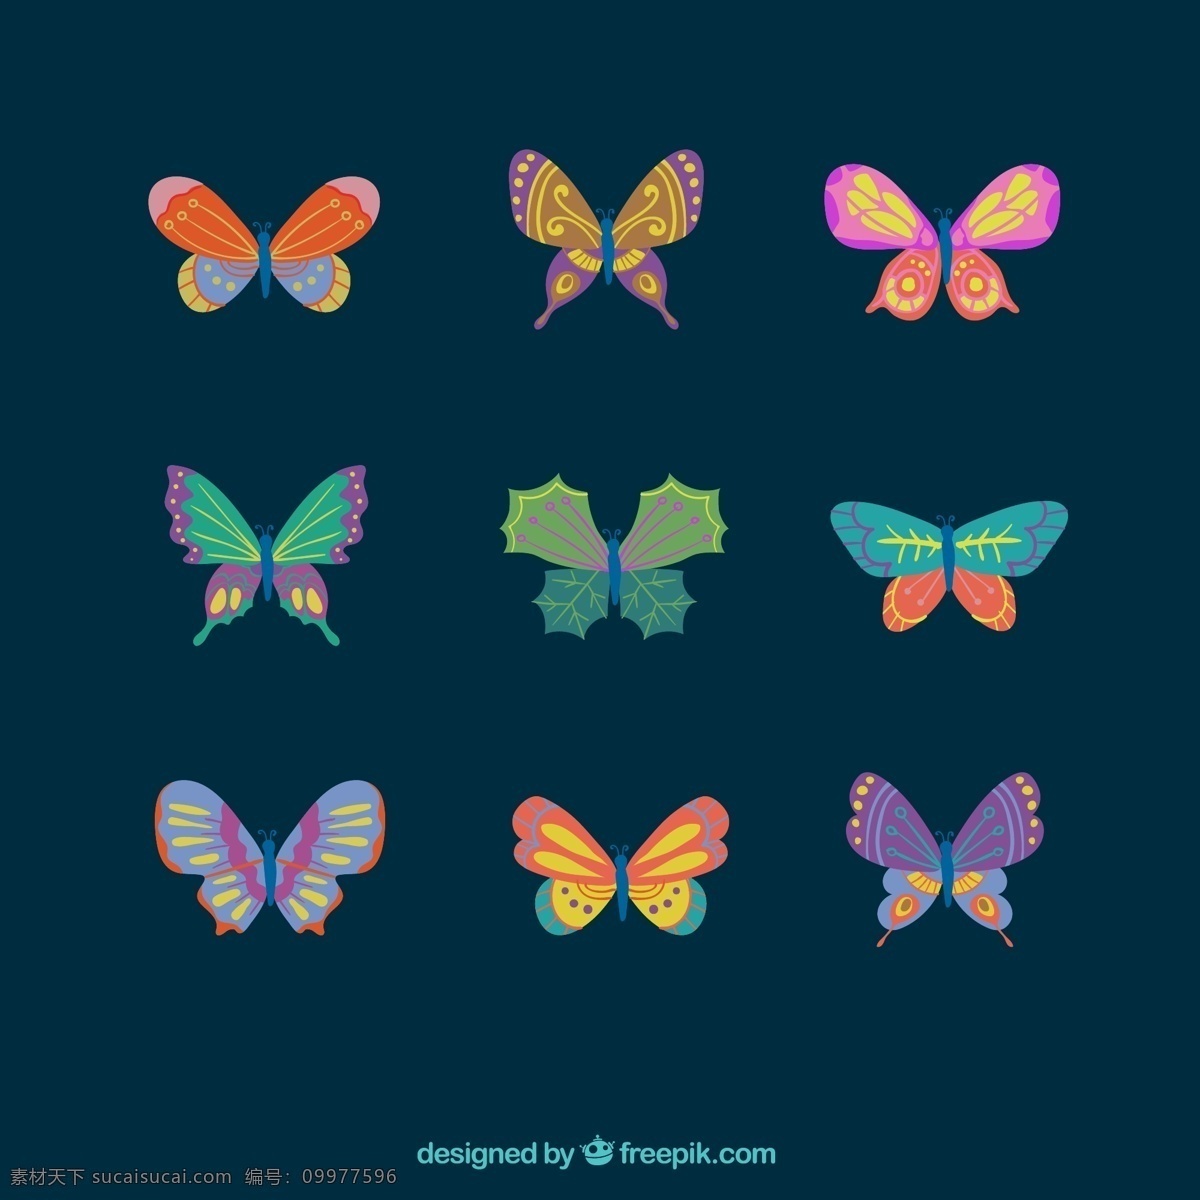 创意 彩色 可爱 蝴蝶 元素 设计素材 创意设计 动物 小动物 卡通 矢量素材 彩色蝴蝶